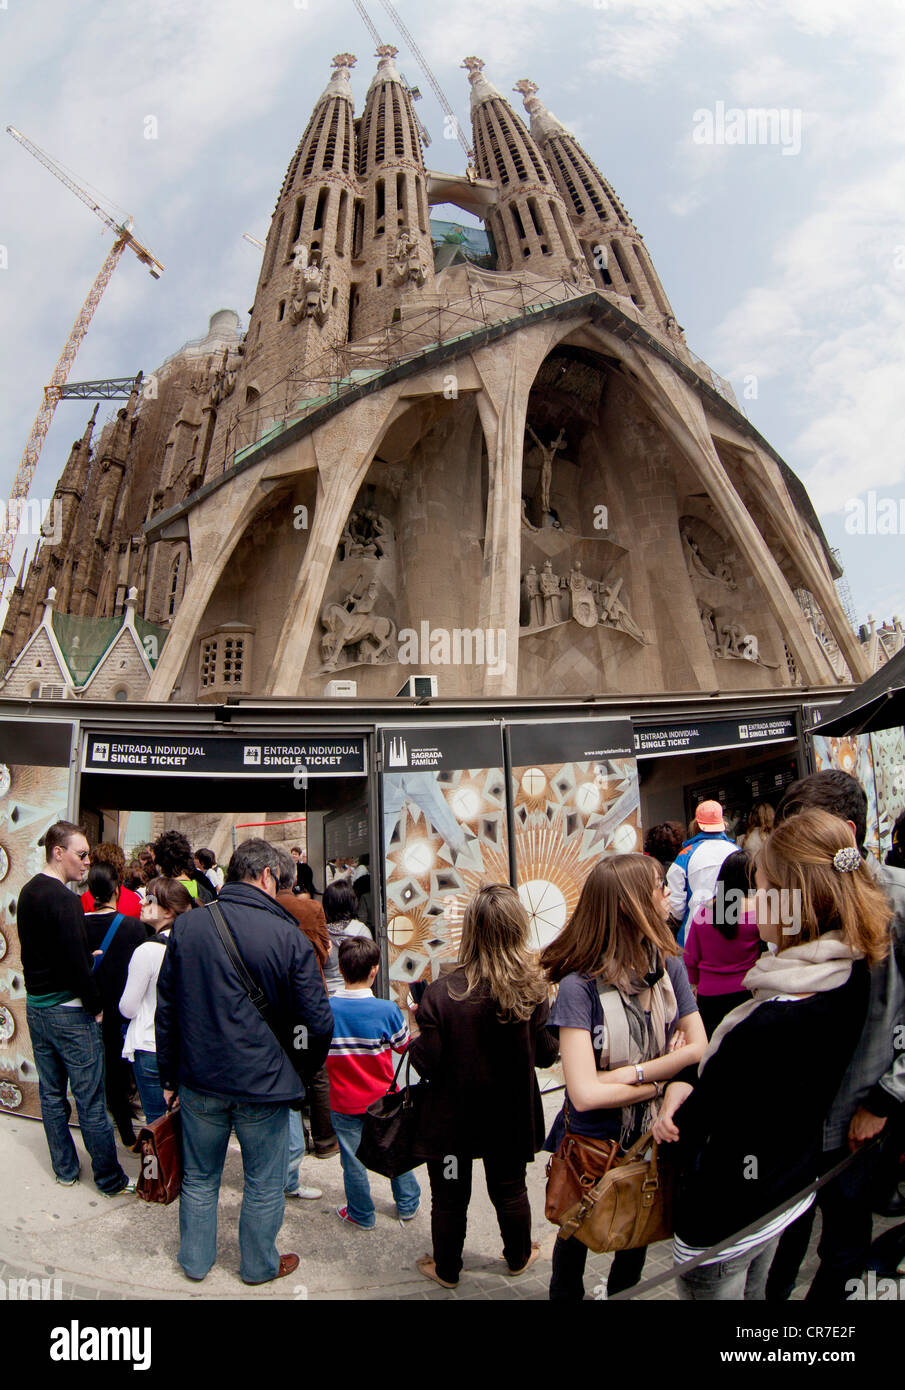 Ingresso, box office, cancello di sicurezza, facciata della Passione, Sagrada Familia Basílica i Temple Expiatori de la Sagrada Família, Foto Stock